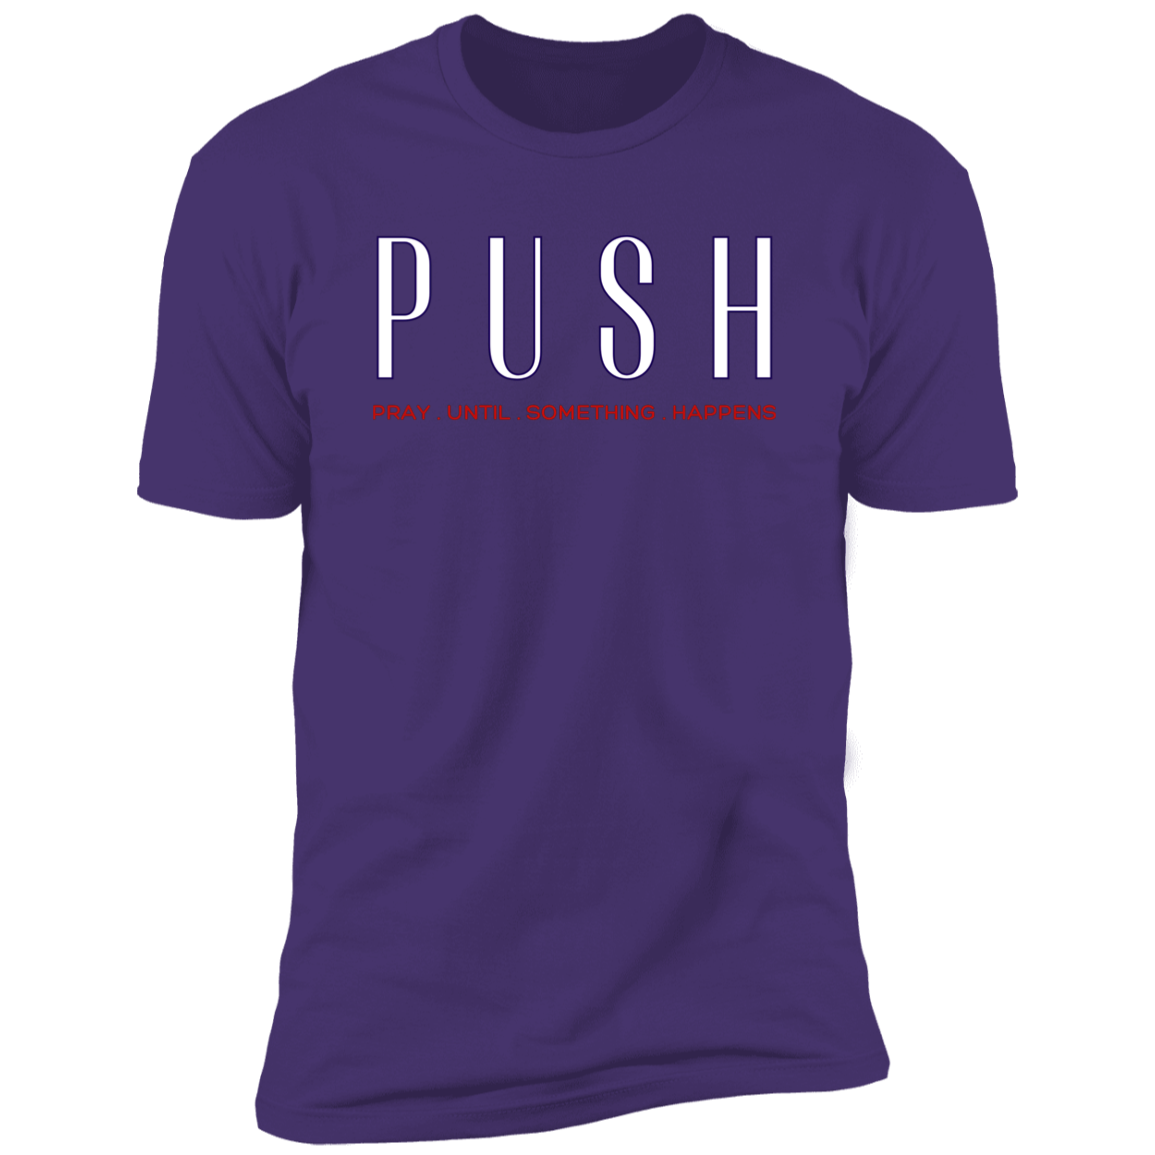 PUSH T-shirt